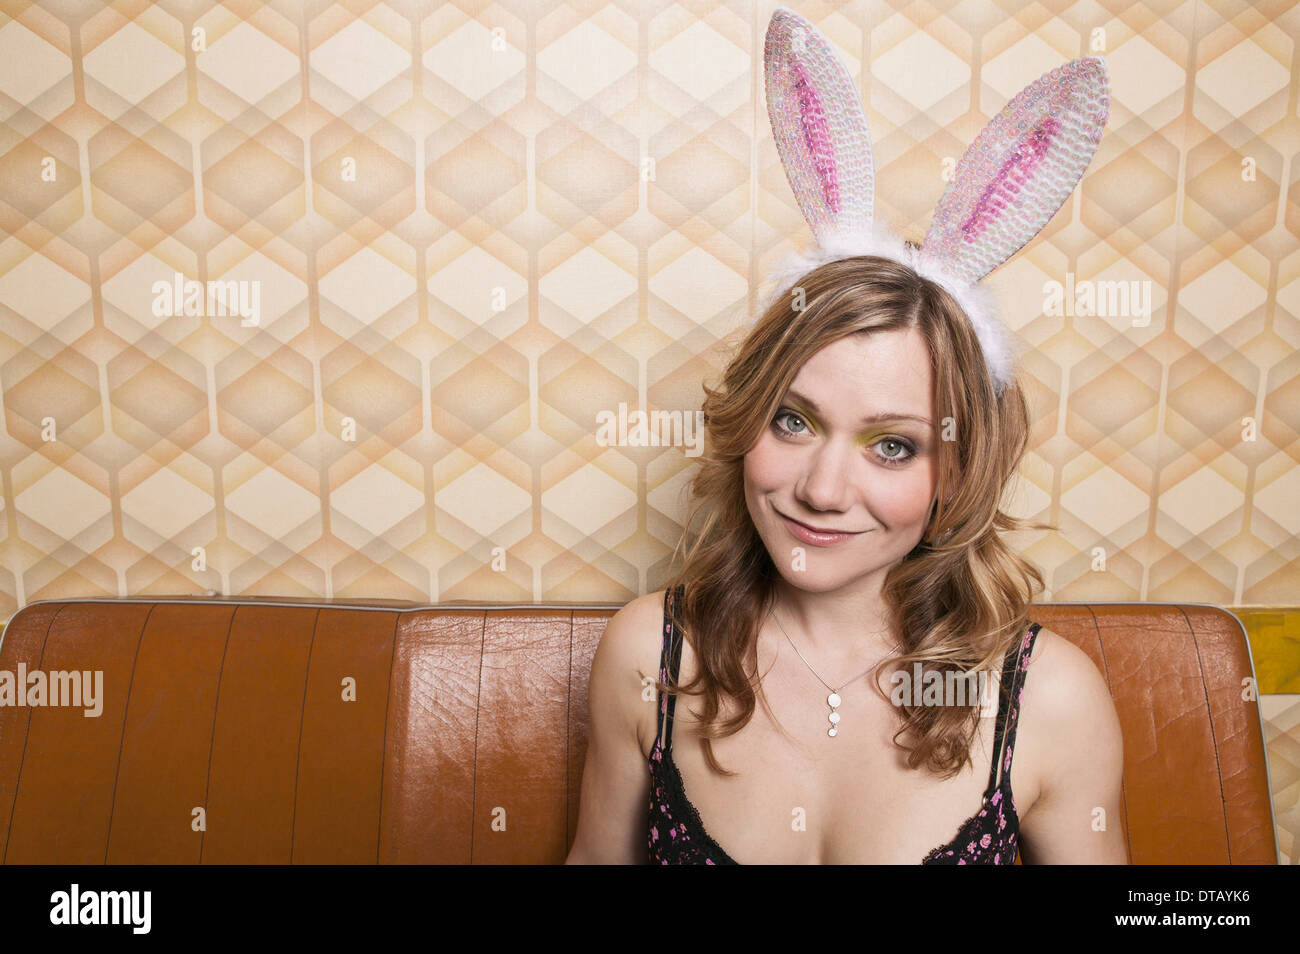 Ritratto di una donna con orecchie di coniglio, sorridente Foto Stock